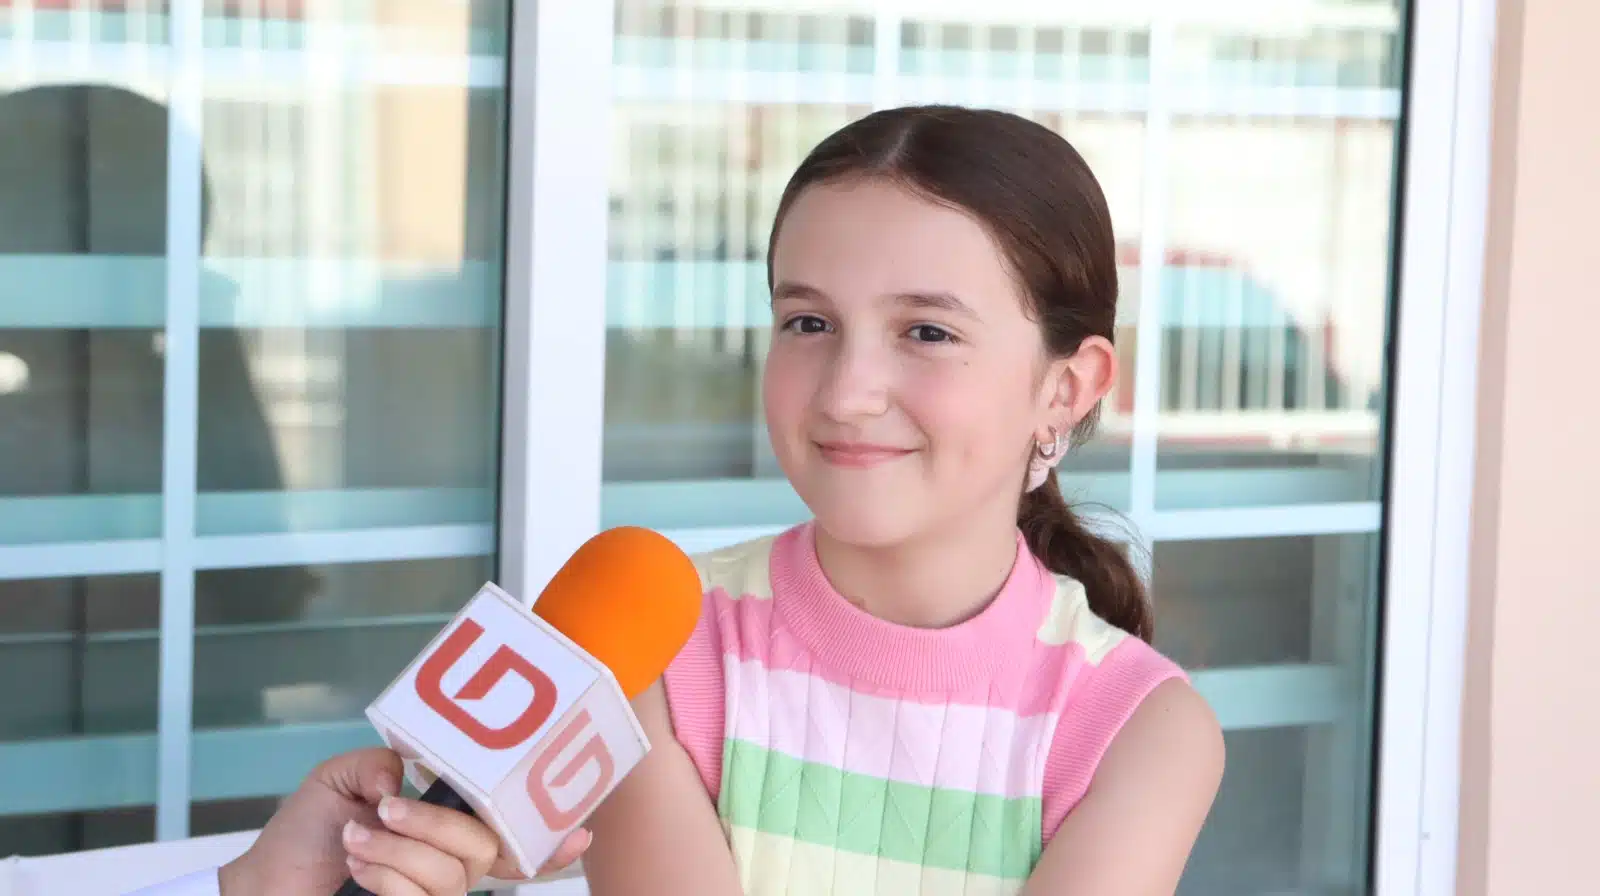 Dayna Soitout Madueño, una niña de 11 años, bailarina, cantautora, editora de videos y youtuber.